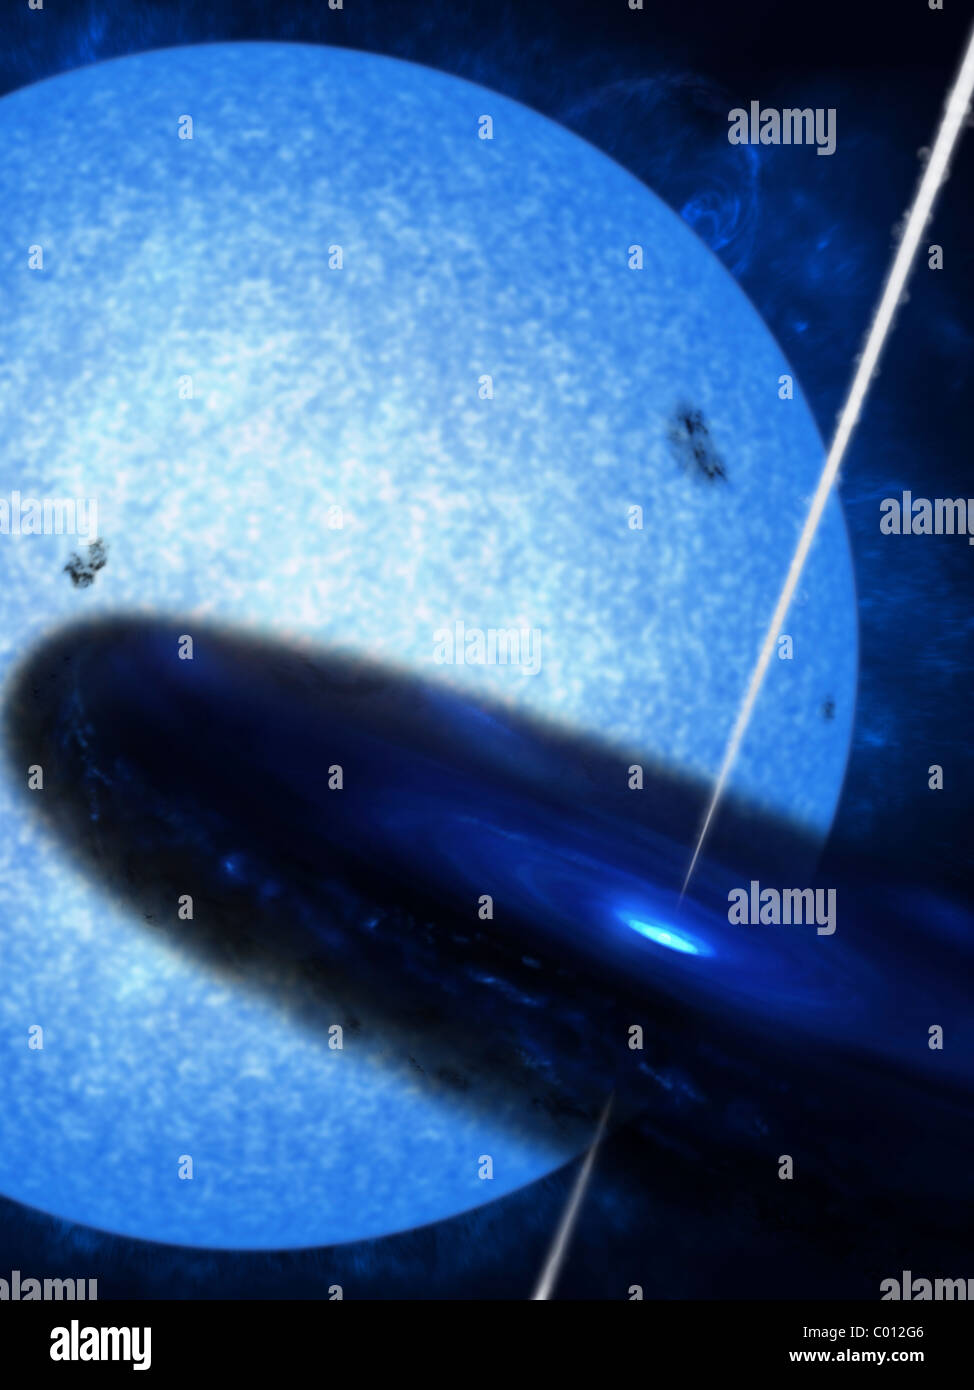 Künstlers Konzept von Cygnus x-1, eine leuchtende Röntgenquelle im Sternbild Cygnus. Stockfoto